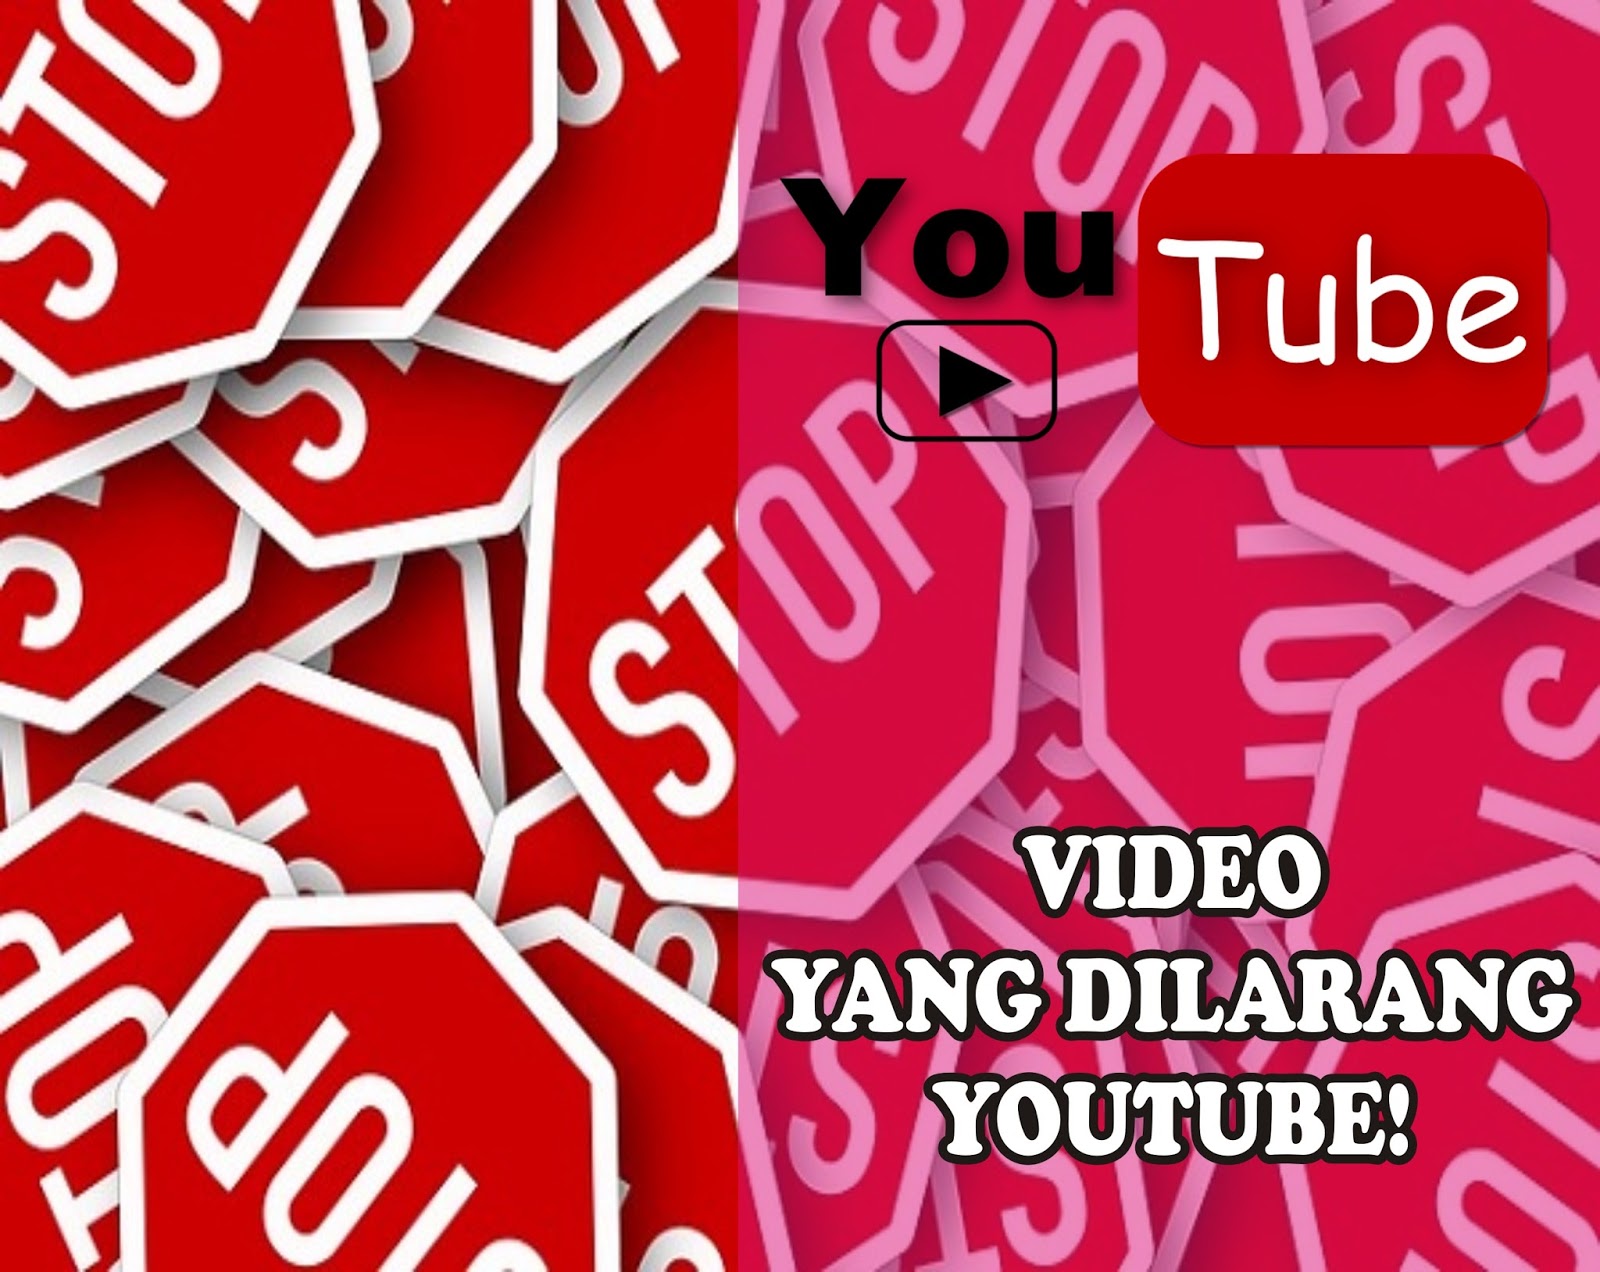 10 Larangan Youtube yang harus dihindari Agar akun youtube gak dibanned